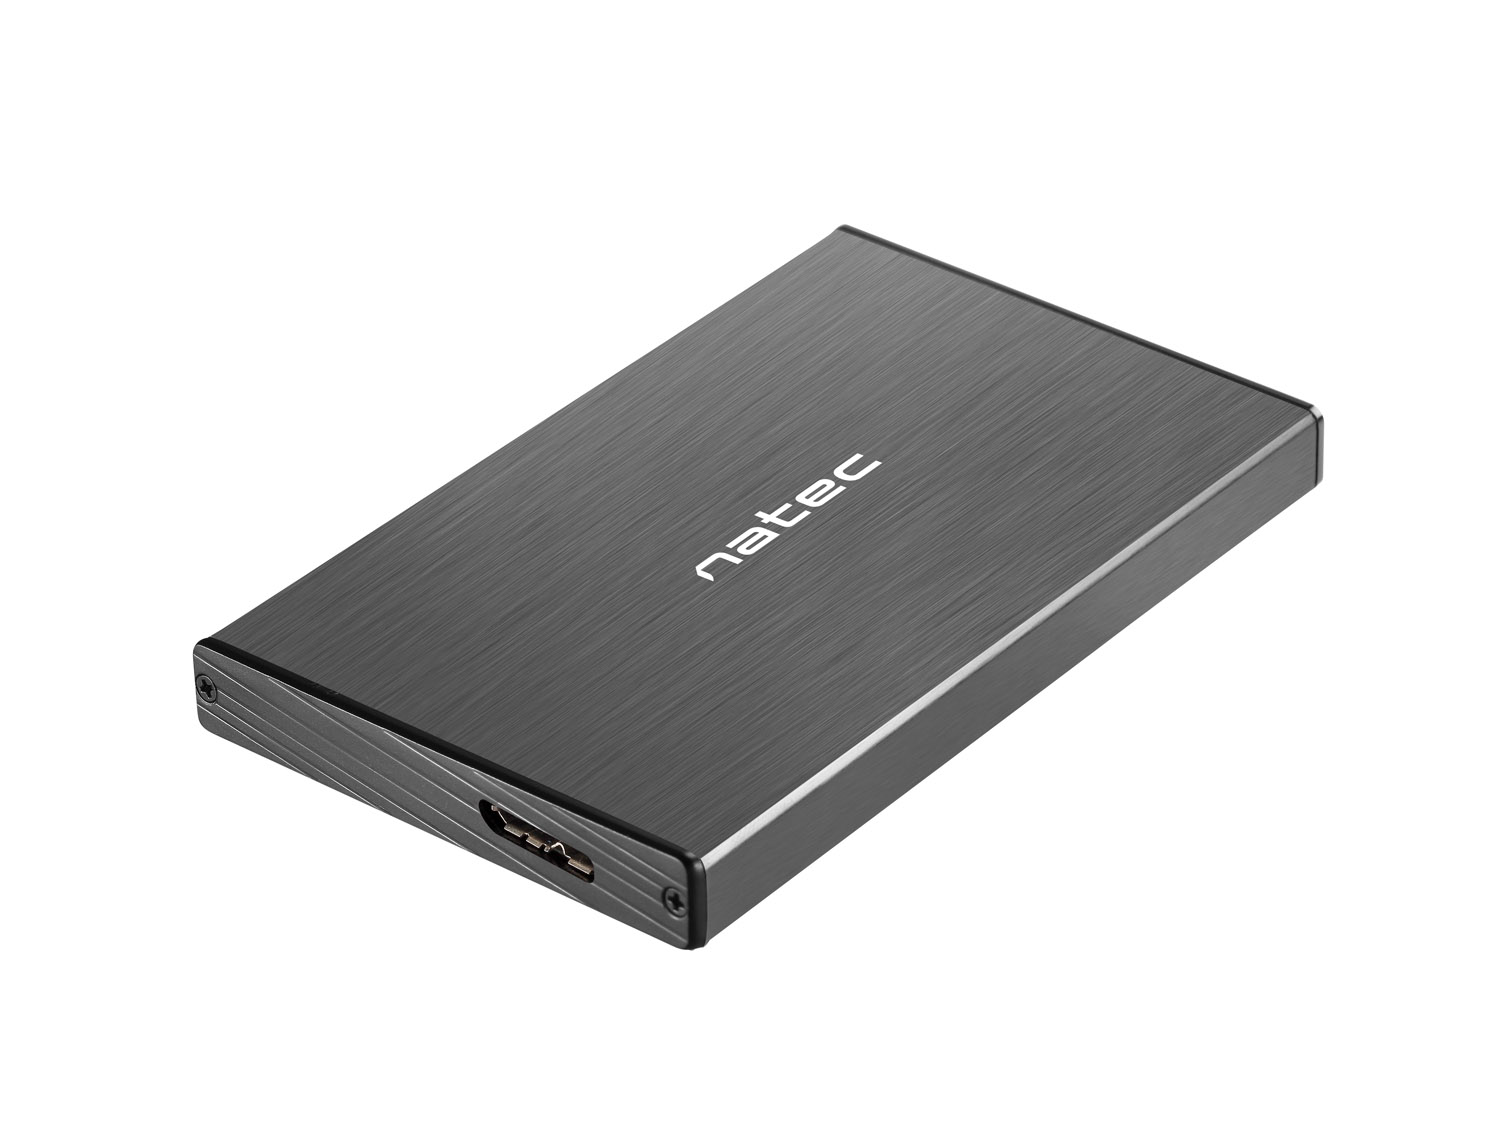 Externí box pro HDD 2,5'' USB 3.0 Natec Rhino Go, černý, hliníkové tělo